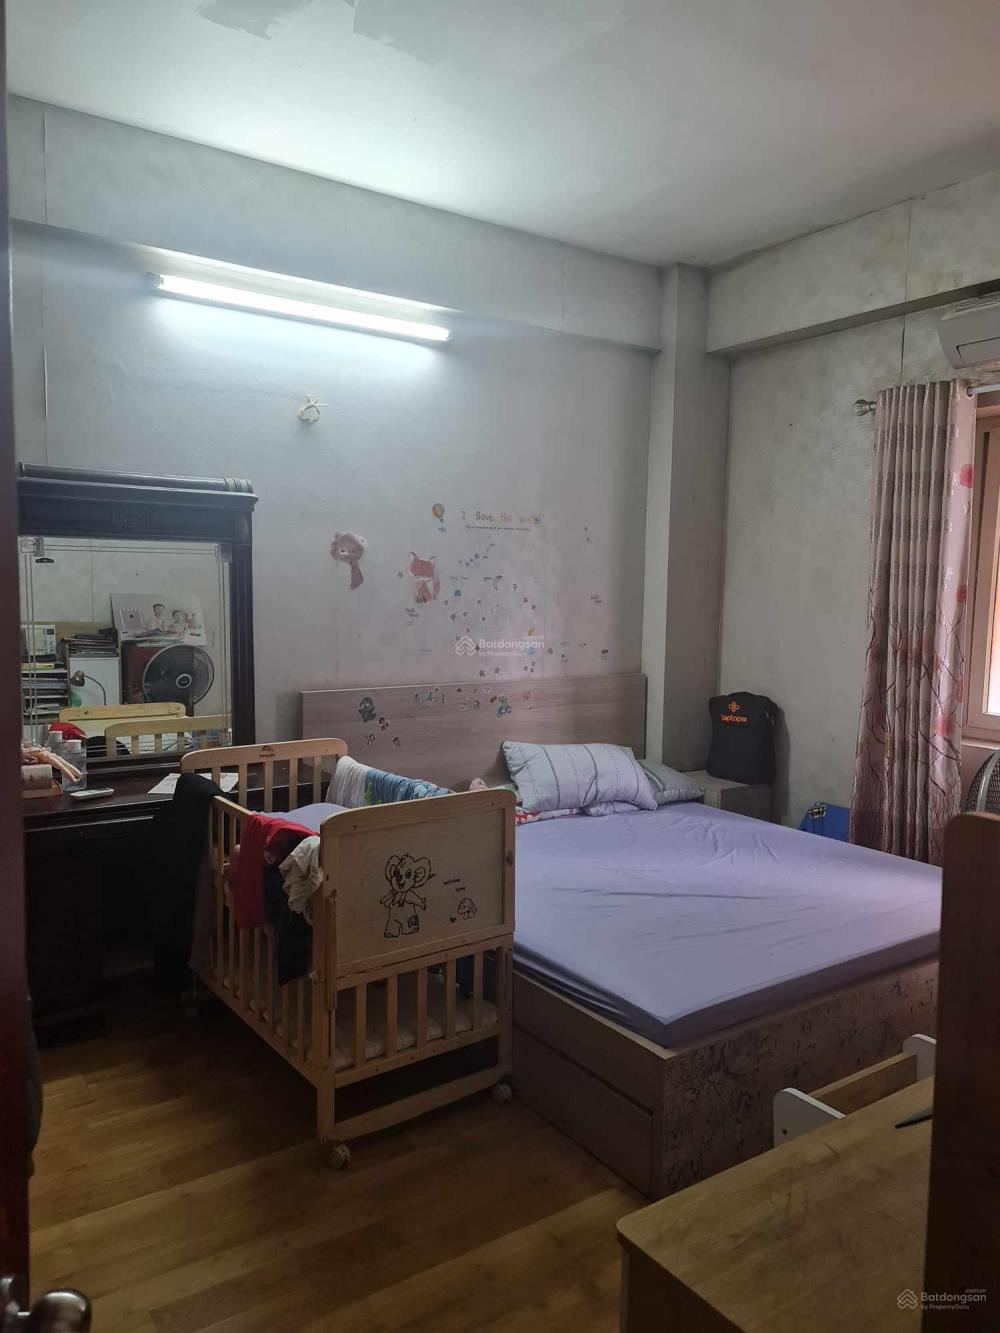 Bán căn hộ chung cư D5A mặt đường Trần Thái Tông, Cầu Giấy1466049